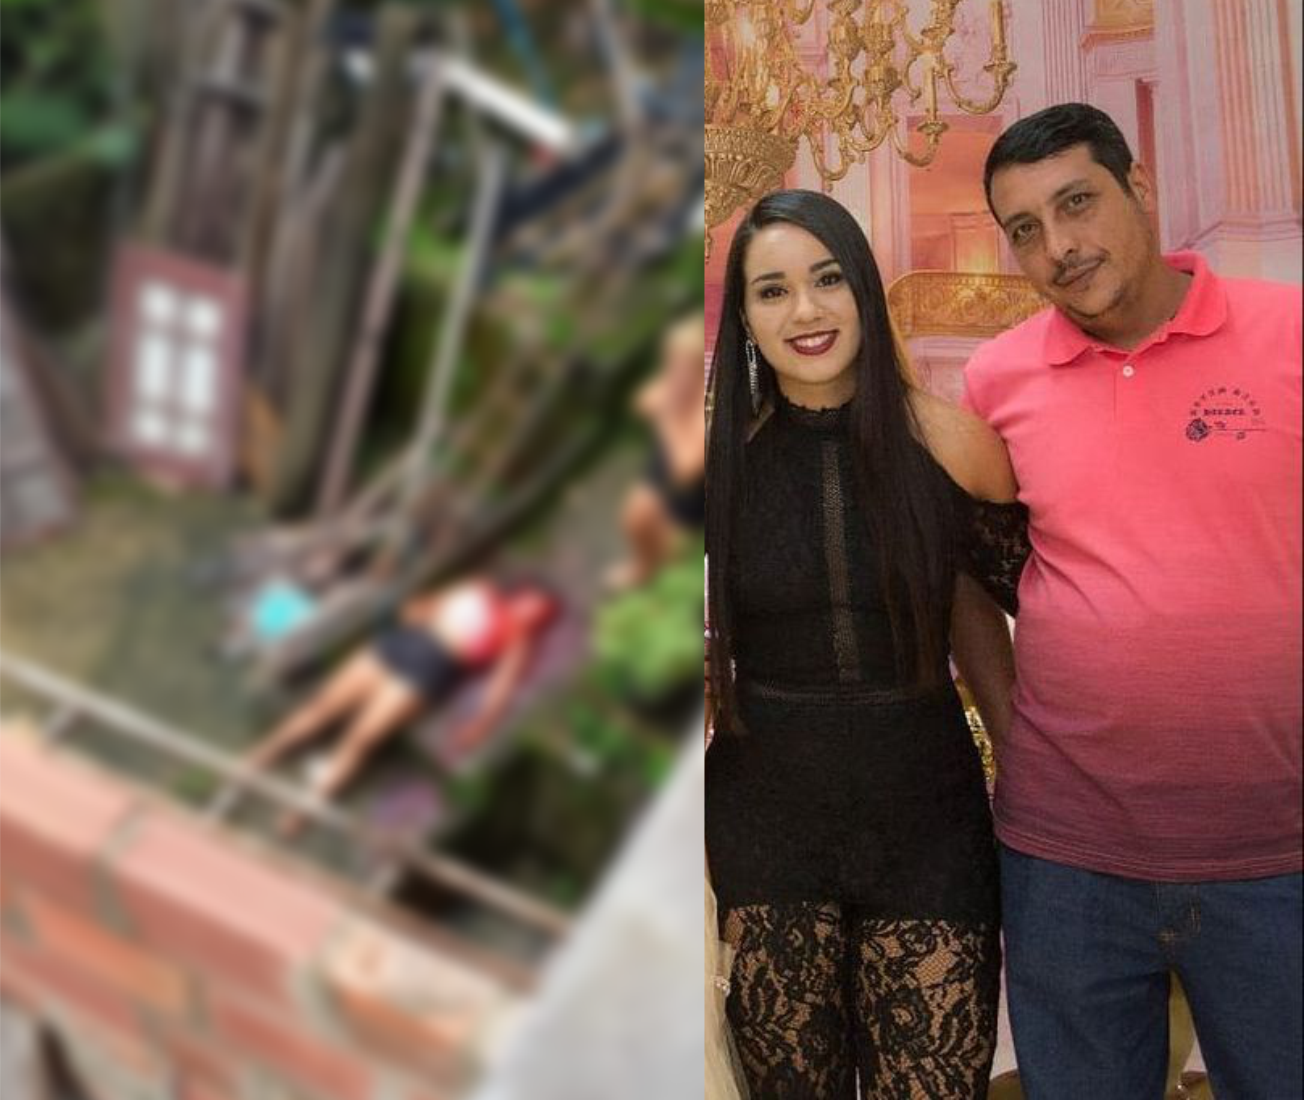 MARRETA DA MORTE | Ex-marido mata mulher a marretadas, furta carro e se joga  da Ponte Rio-Niterói - Rlagos Notícias